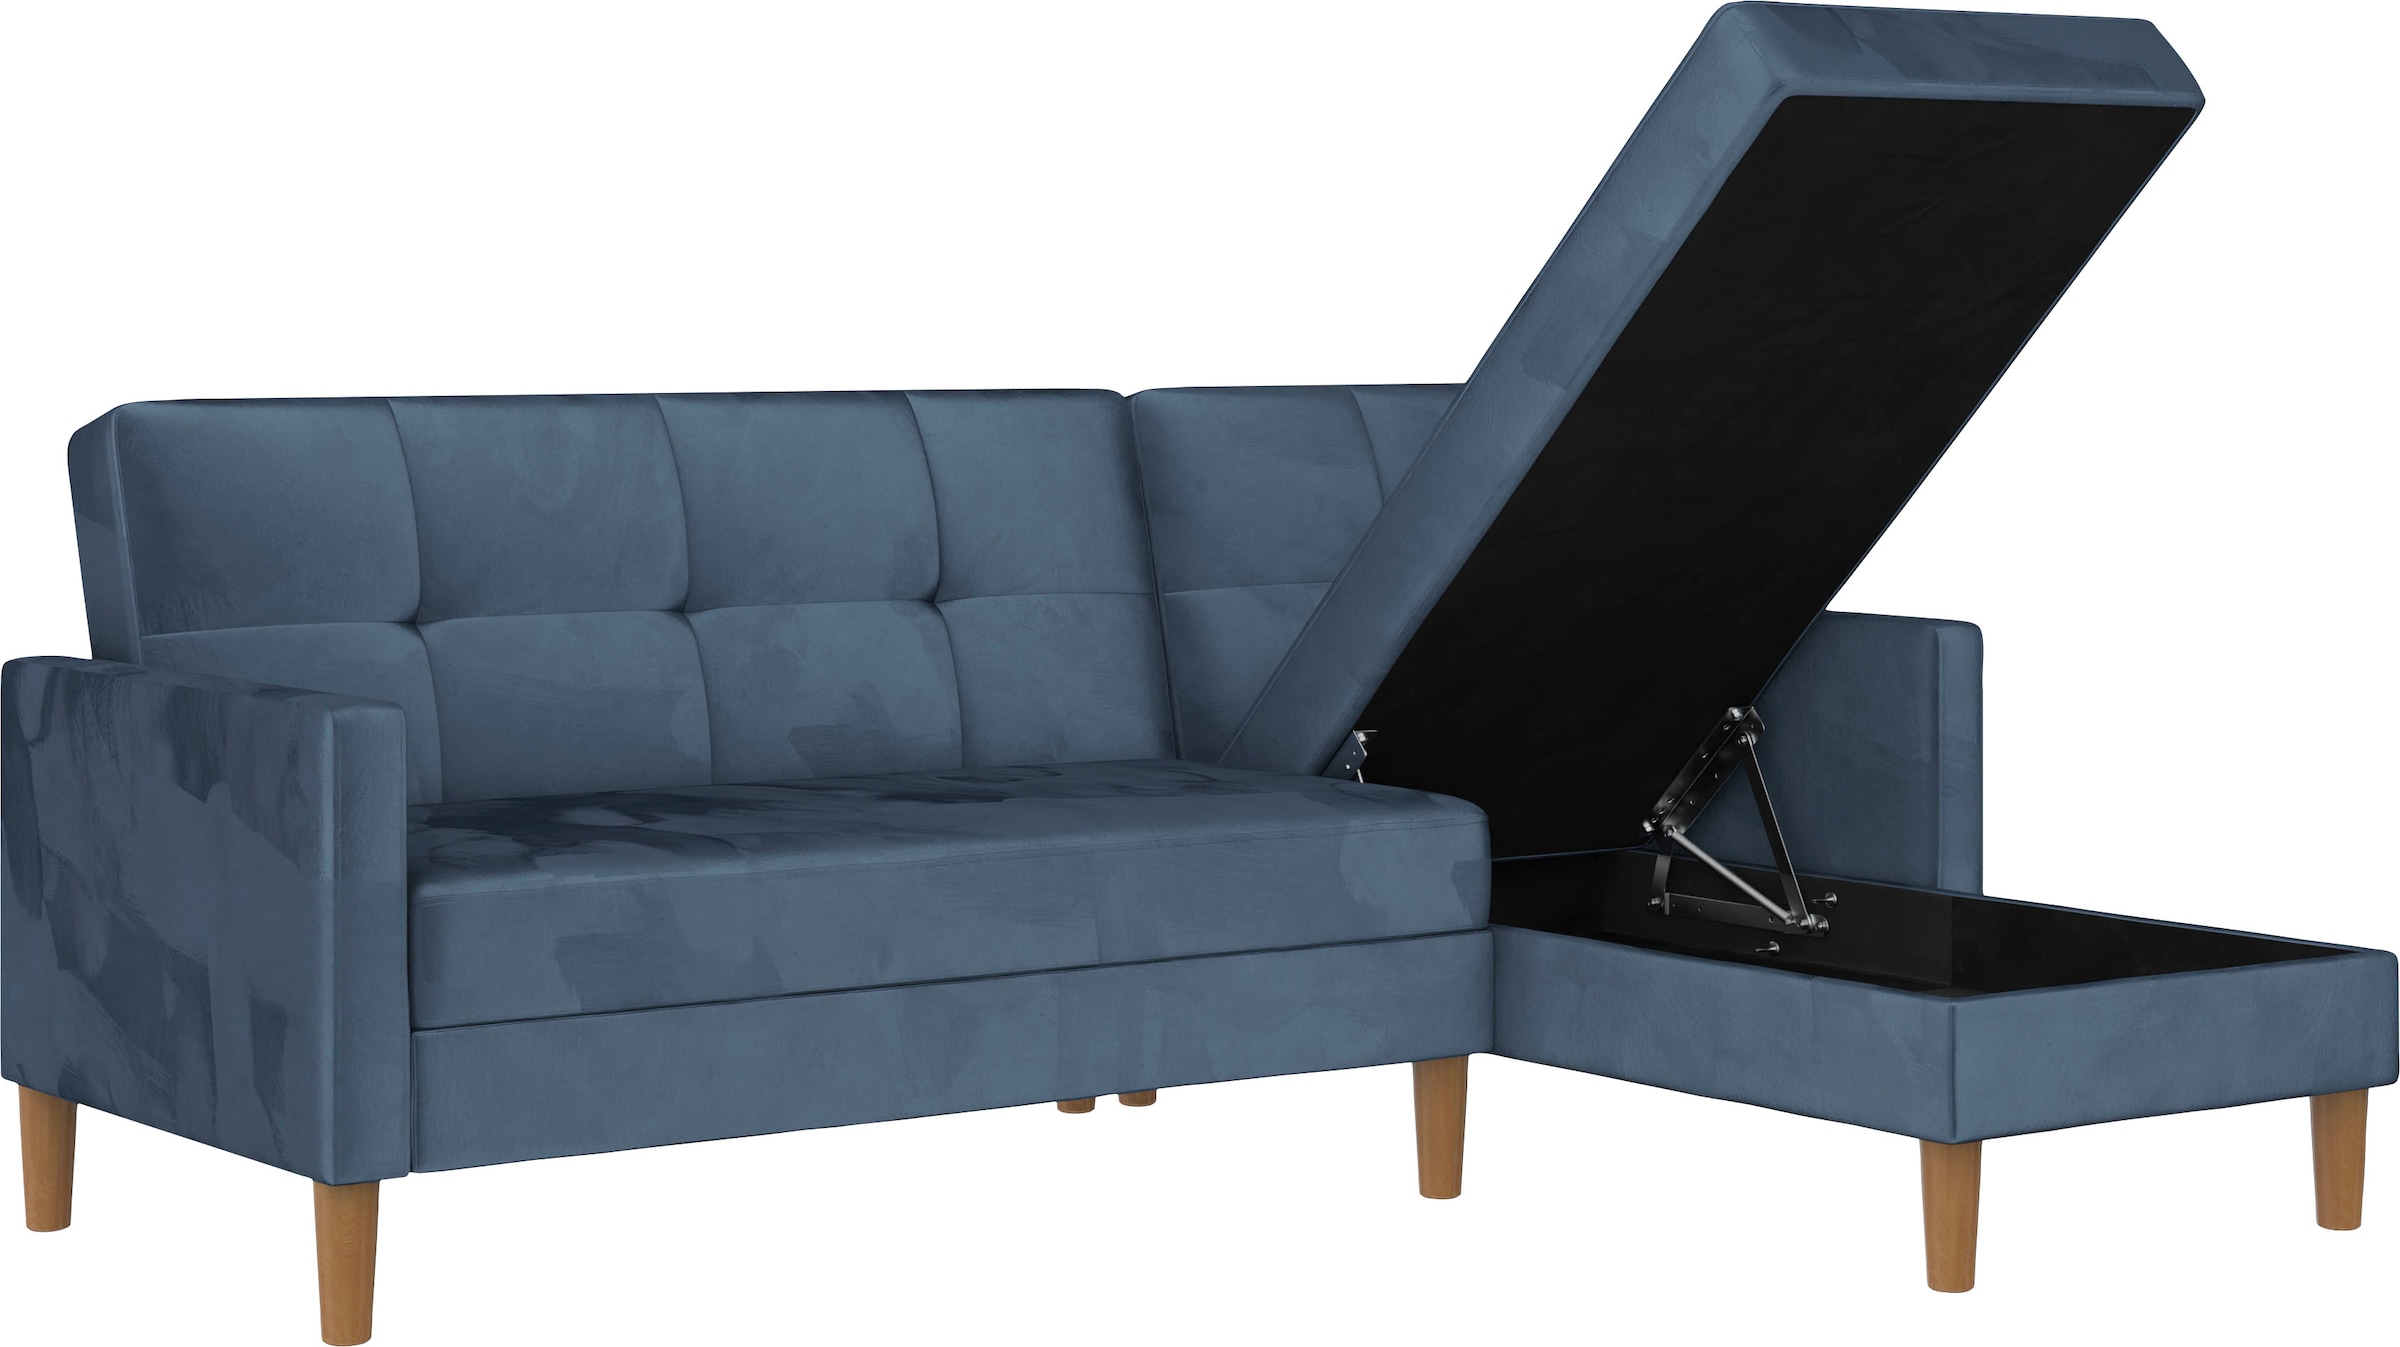 Dorel Home Ecksofa »Lilly, L-Form,«, mit Bett-Funktion, Recamiere beidseitig montierbar, Sitzhöhe 43 cm